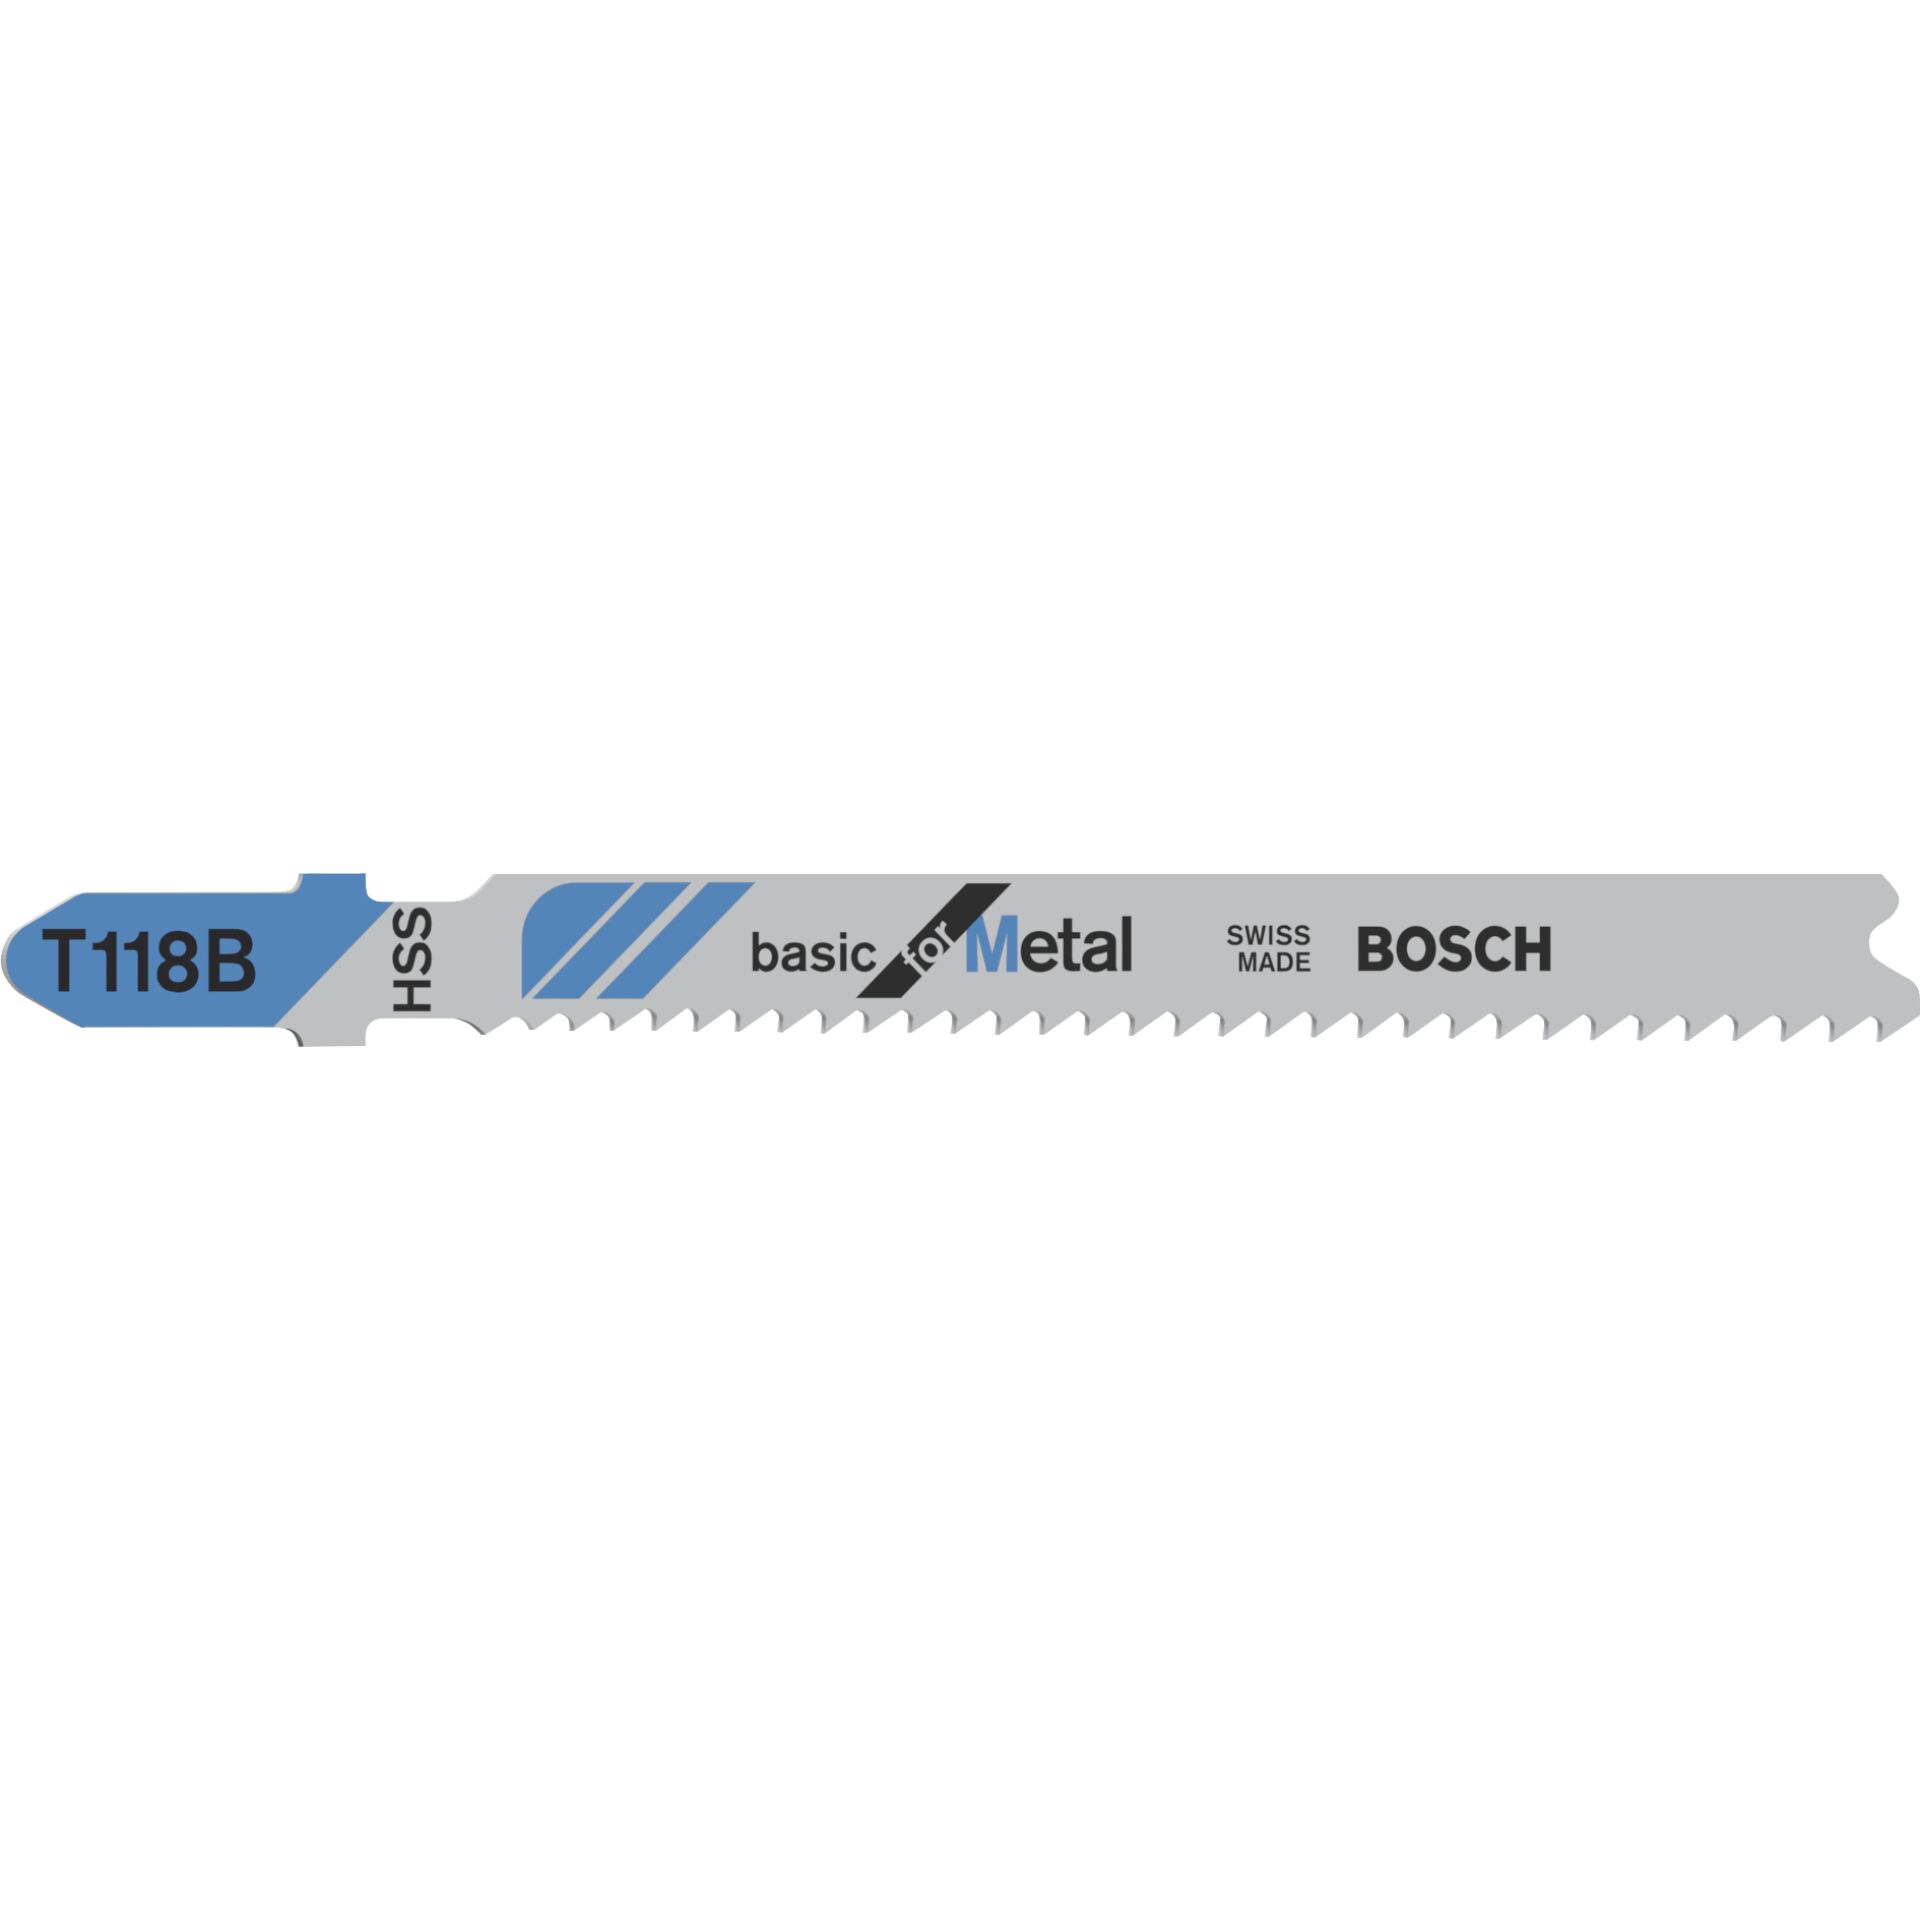 Bosch T 118 B Stichsägeblatt Hochgeschwindigkeitsstahl (HSS) 5 Stück(e)